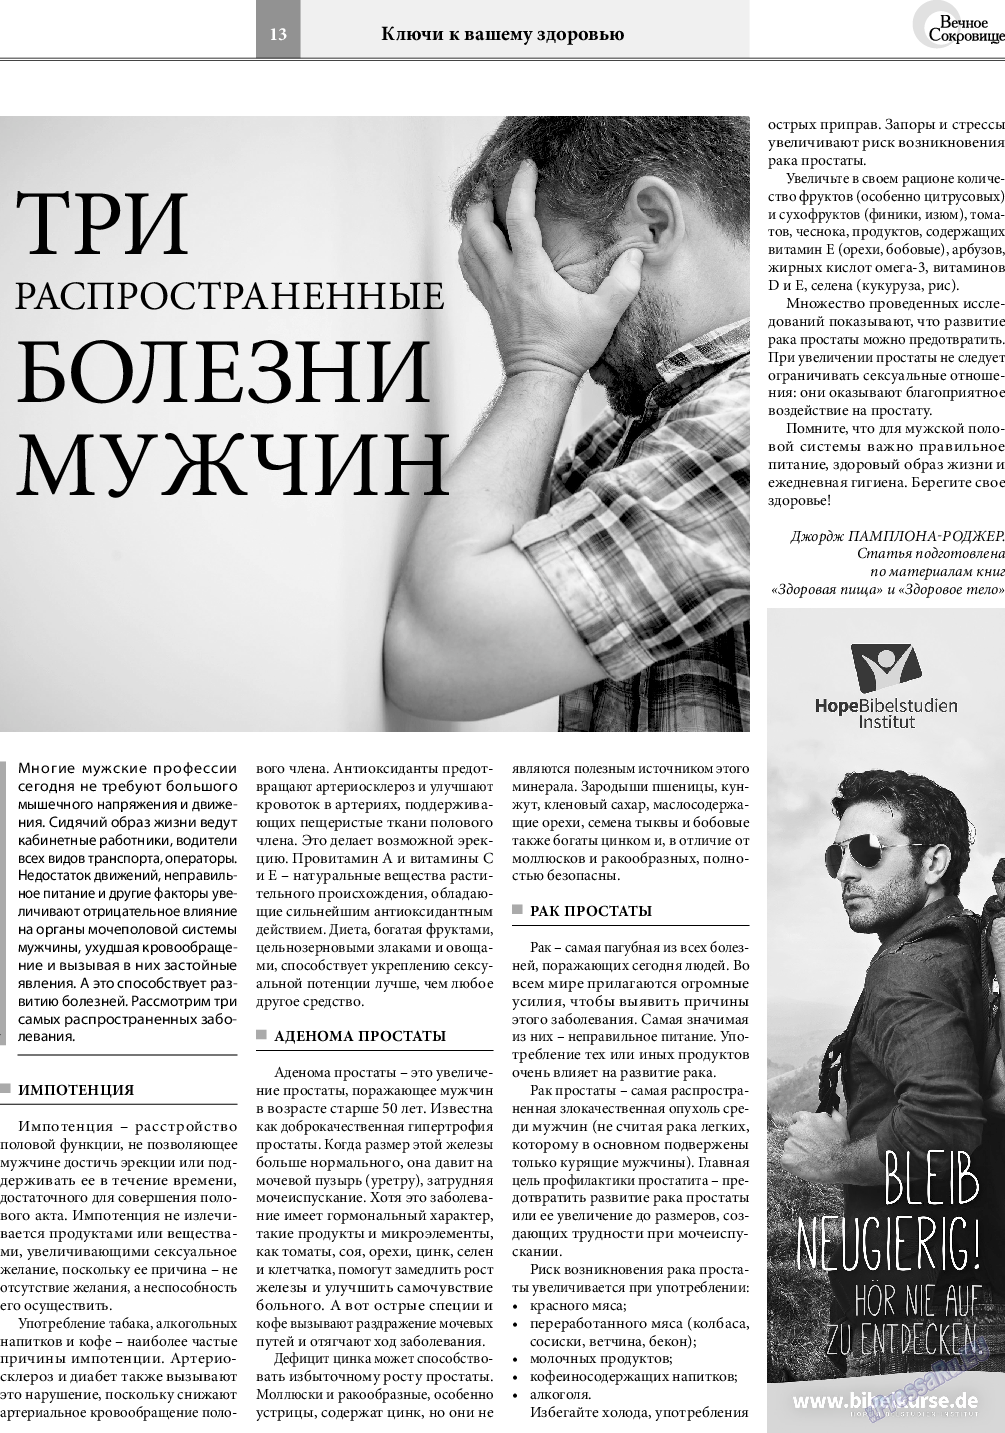 Вечное сокровище, газета. 2019 №6 стр.13